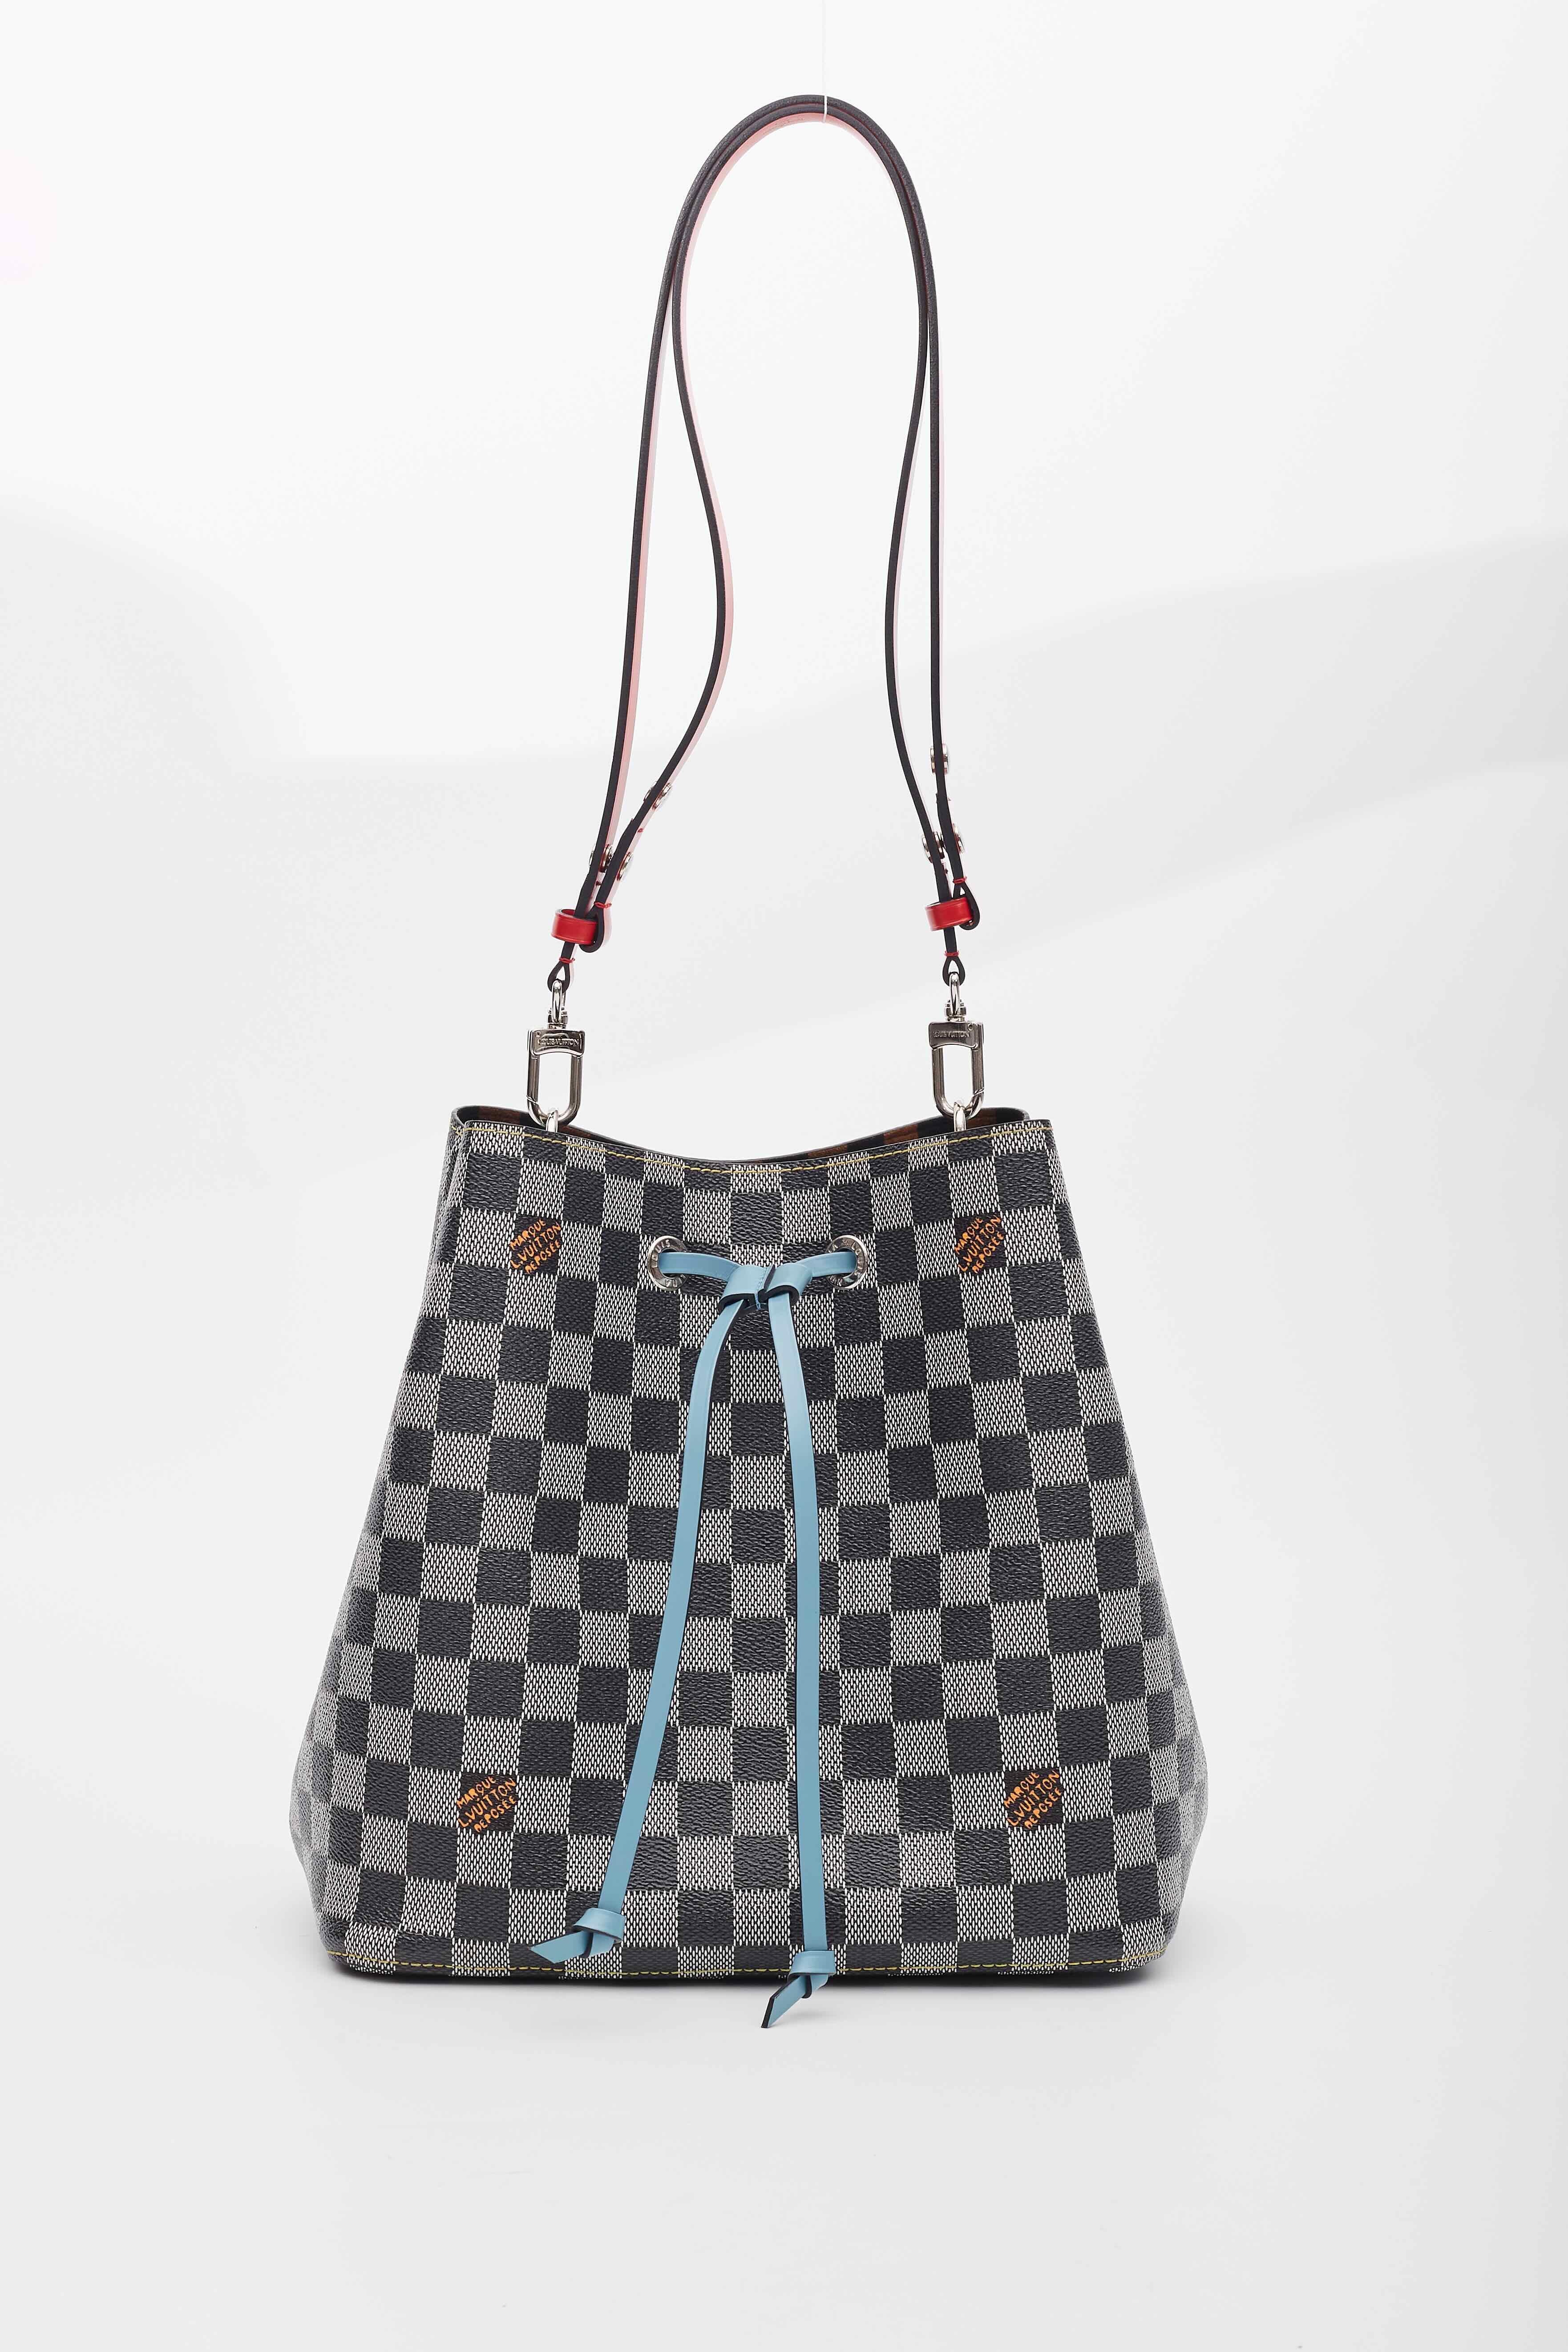 Louis Vuitton Black White Néonoé Mm Drawstring Shoulder Bag For Sale 4